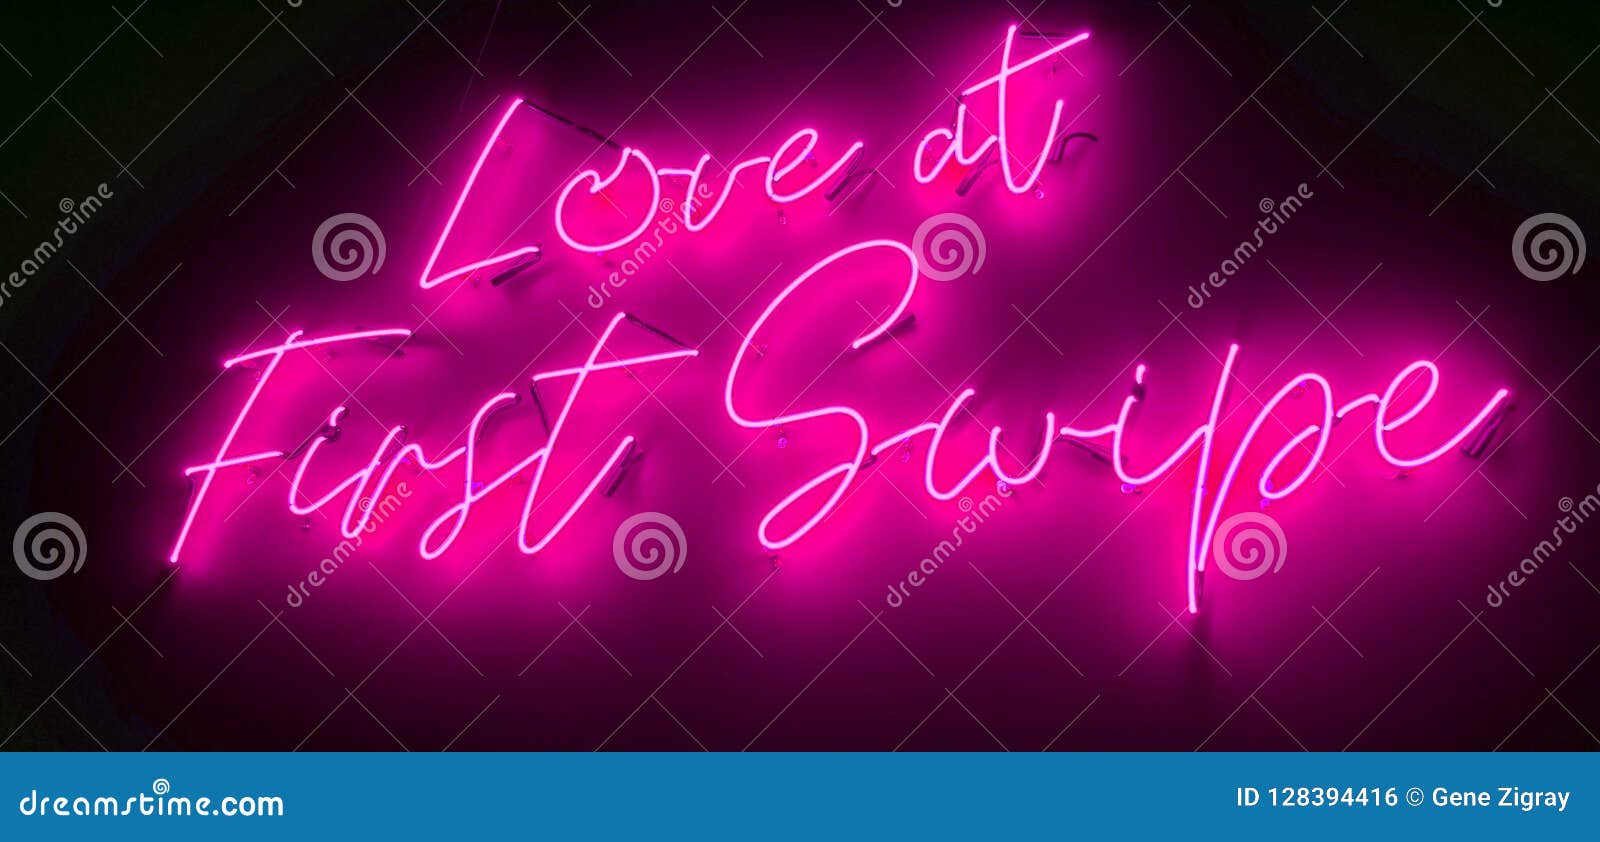 online dating neon ulaanbaatar dating site